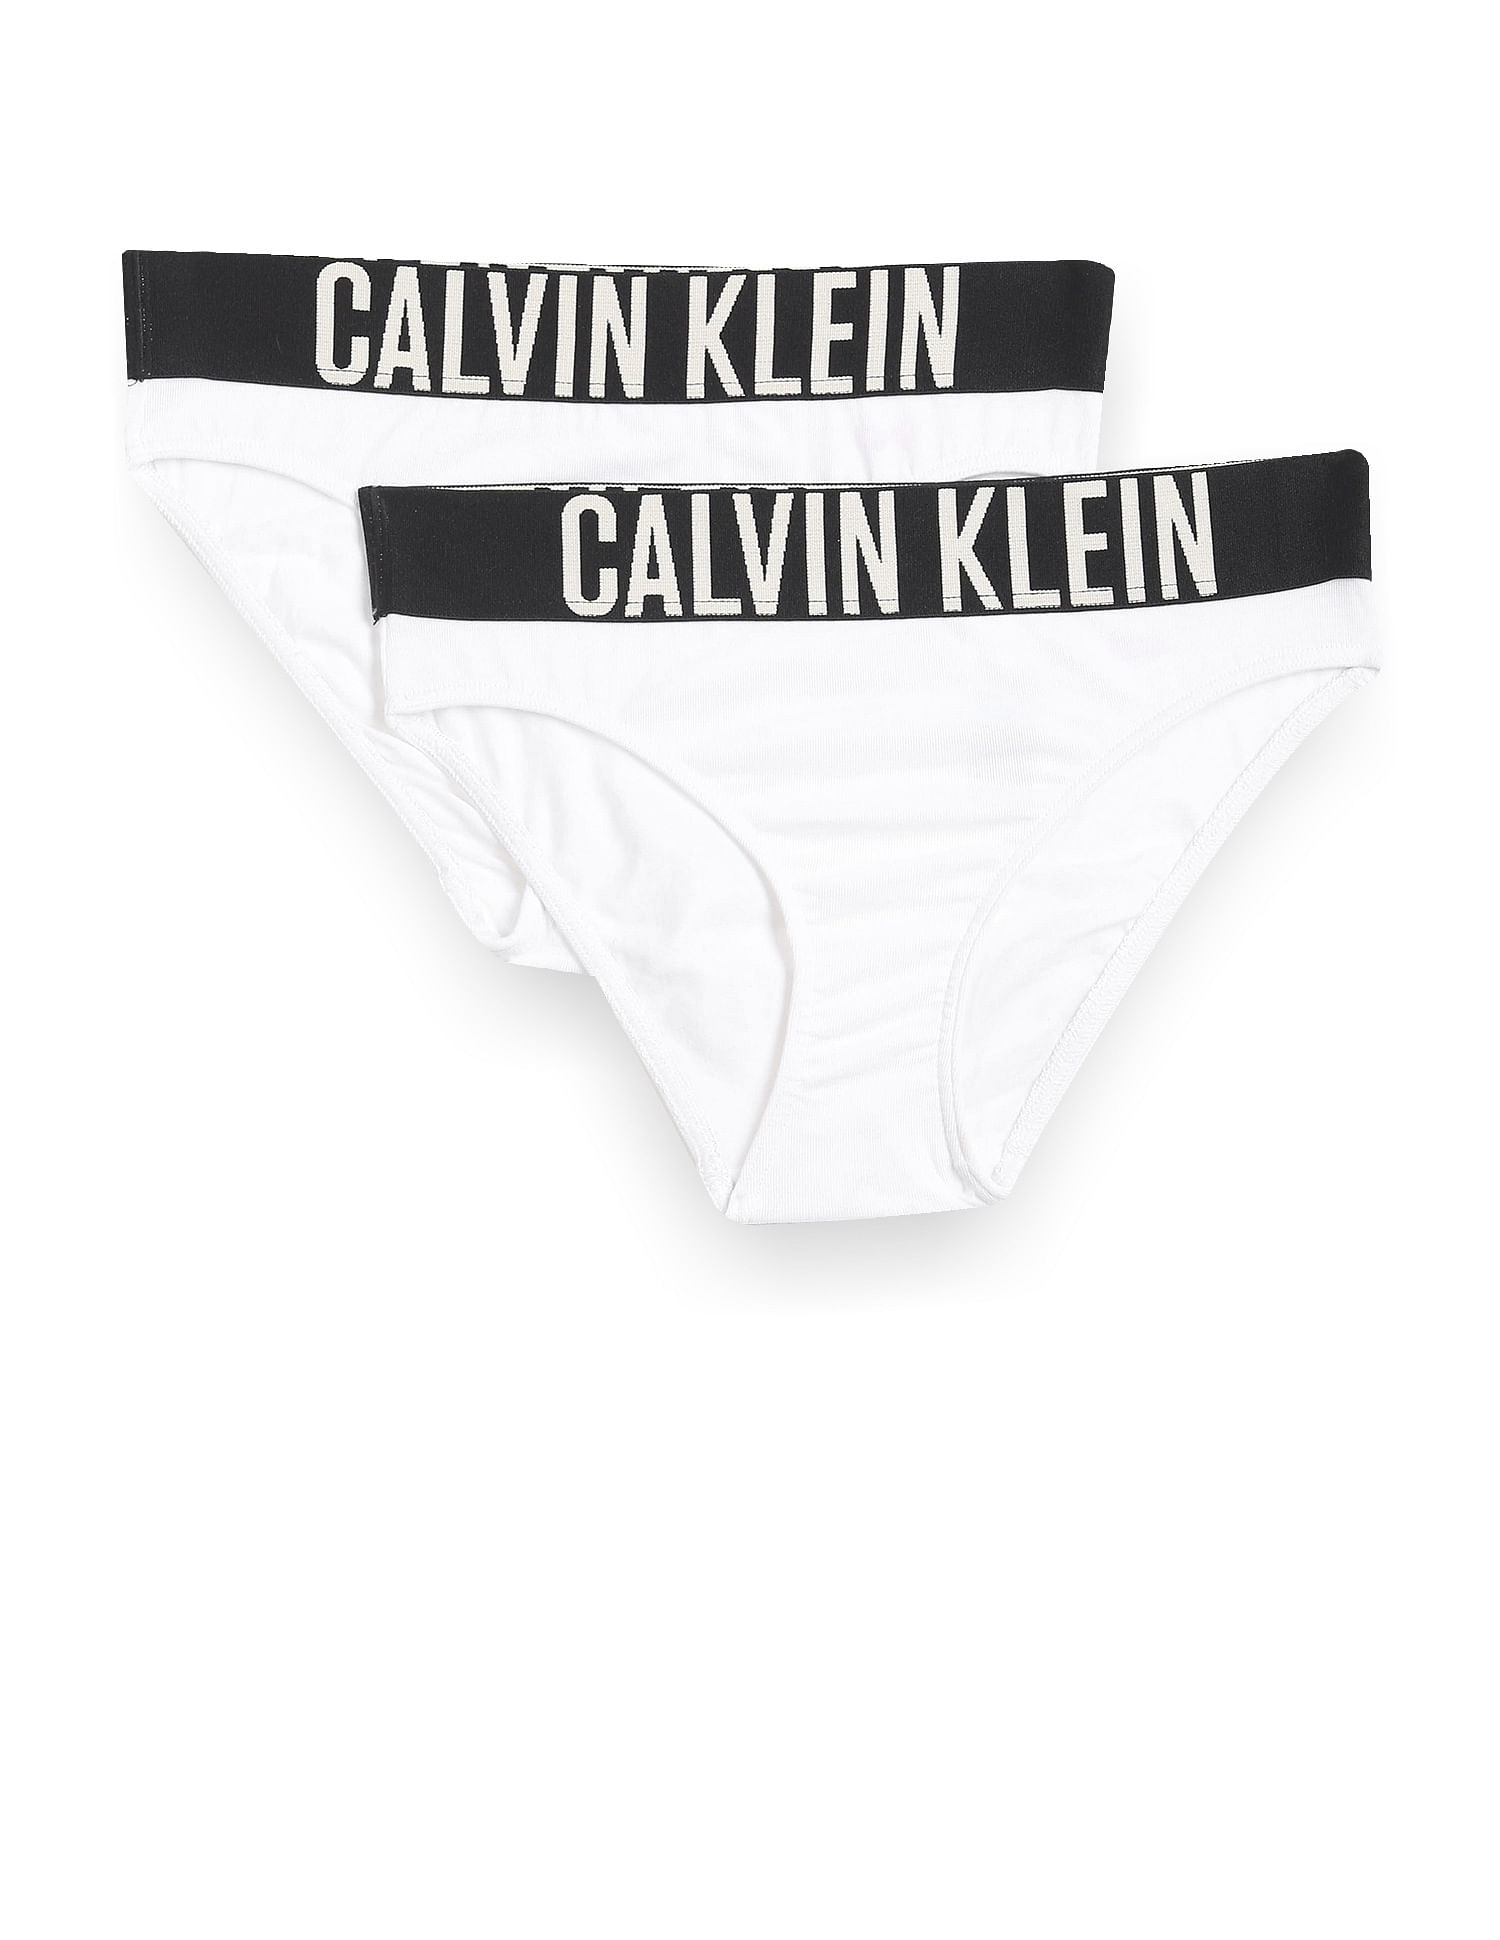 Calvin Klein - Girls Cotton Knickers (2 Pack)